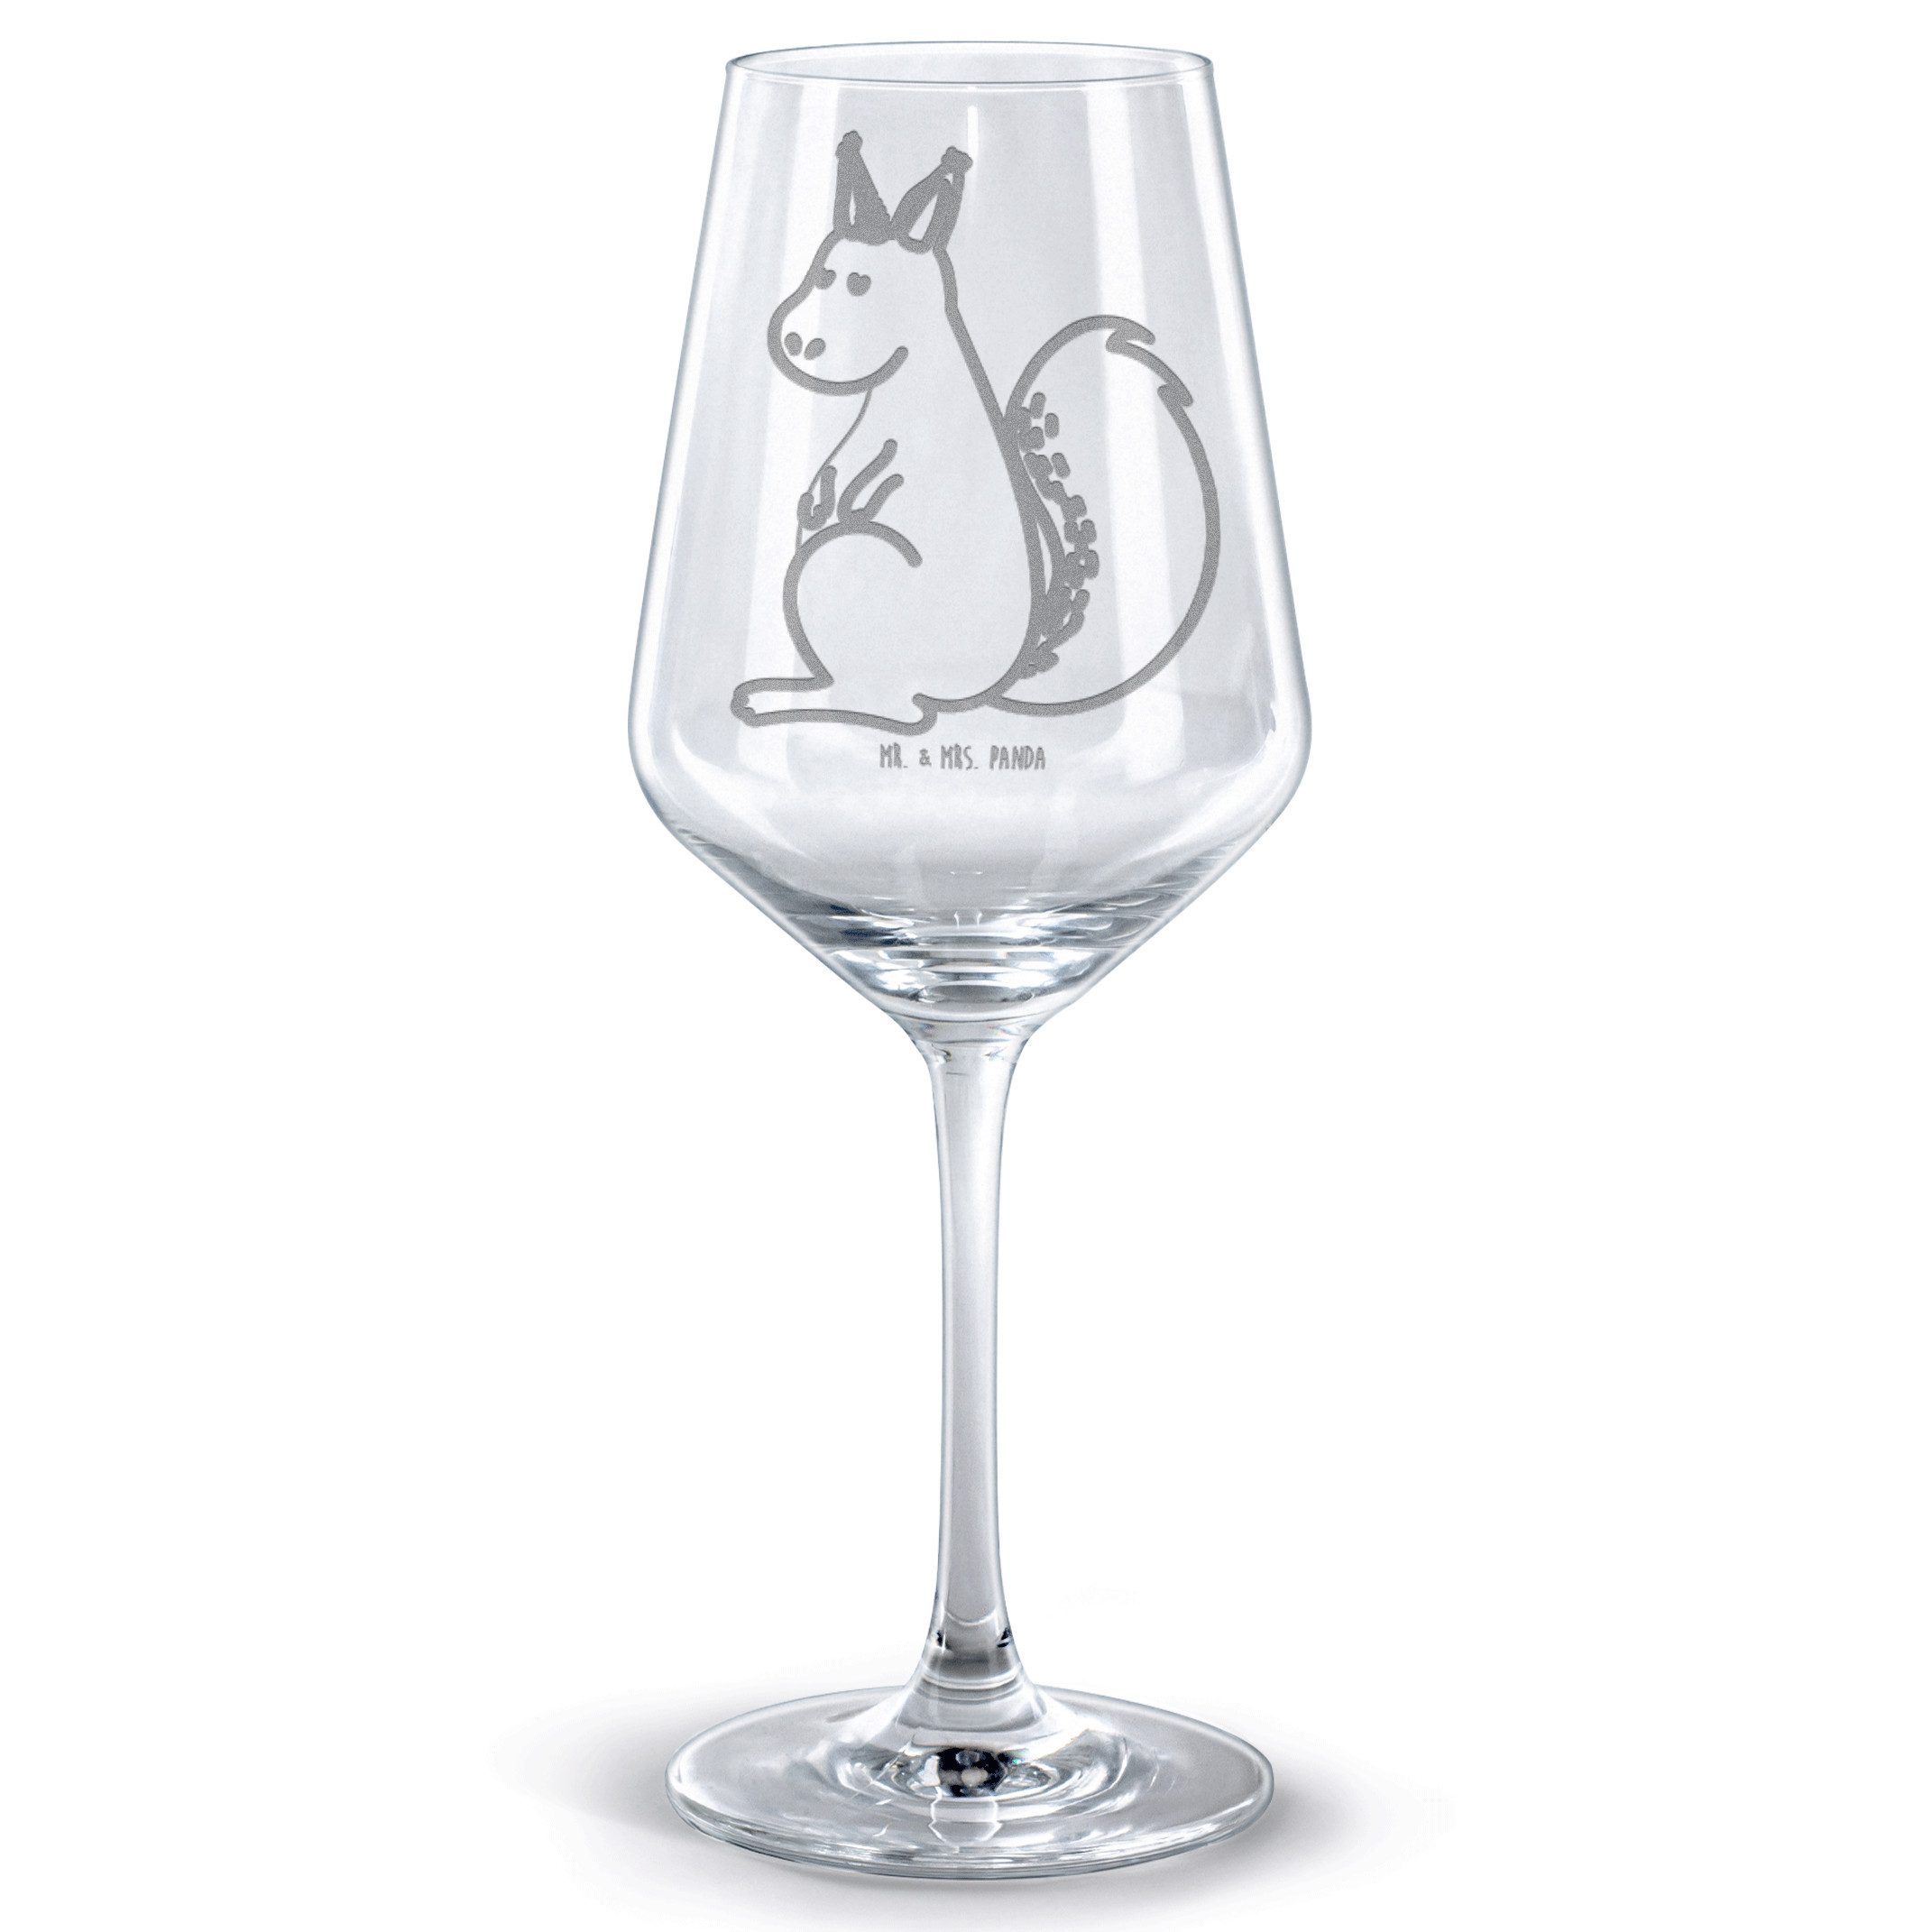 Mr. & Mrs. Panda Rotweinglas Einhorn Glauben - Transparent - Geschenk, Spülmaschinenfeste Weingläs, Premium Glas, Feine Lasergravur